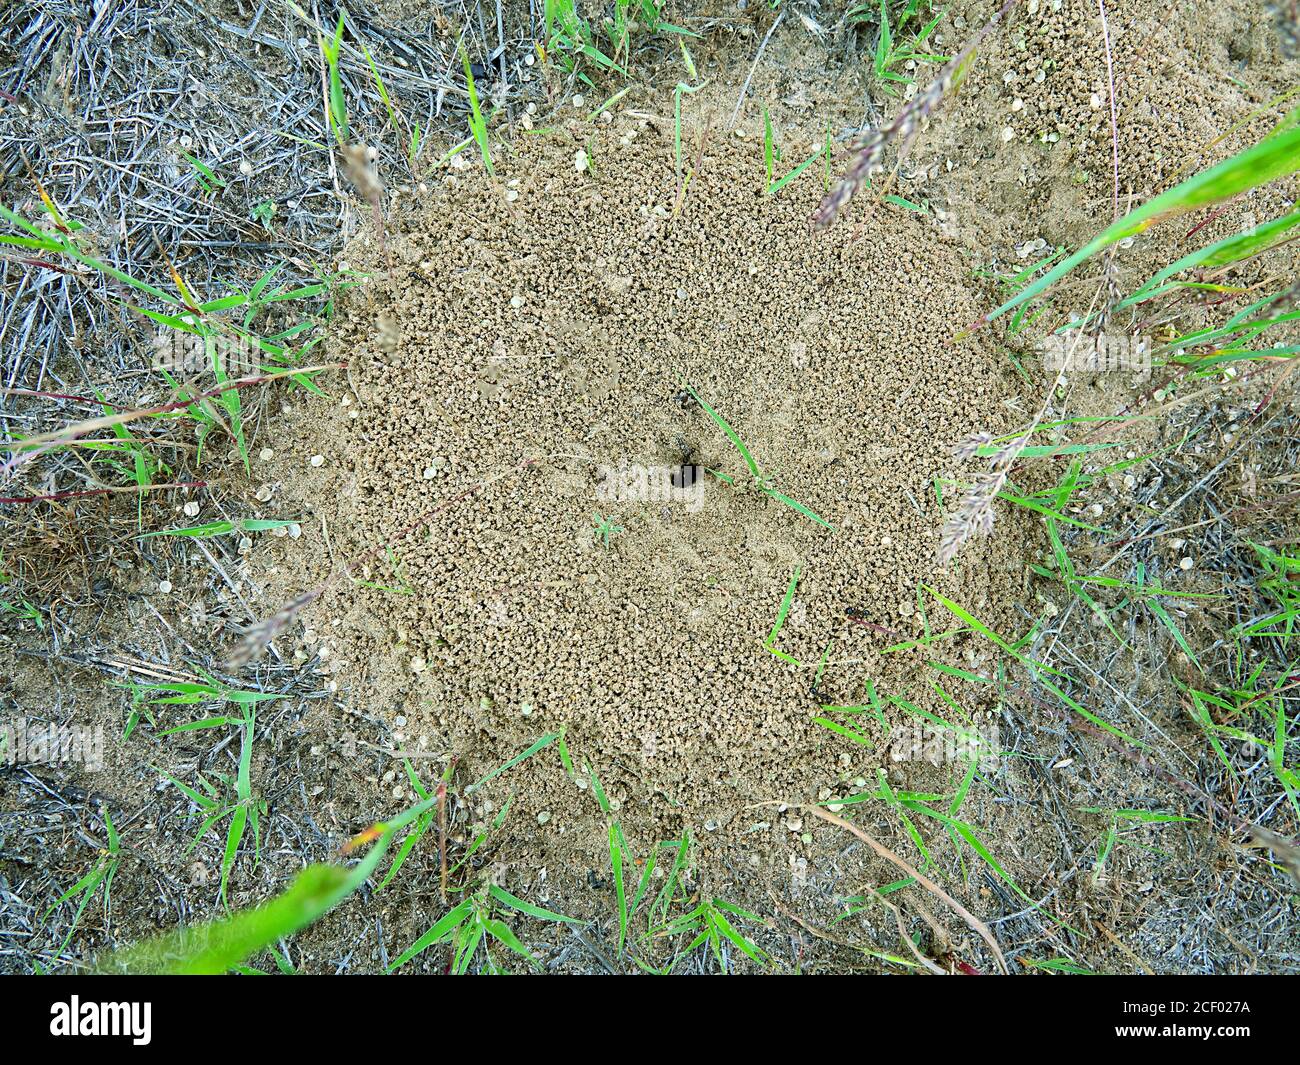 Die Ameisen (Cataglyphis) am Eingang zum unterirdischen Ameisenhaufen. Steppen der unteren Wolga. Russland Stockfoto